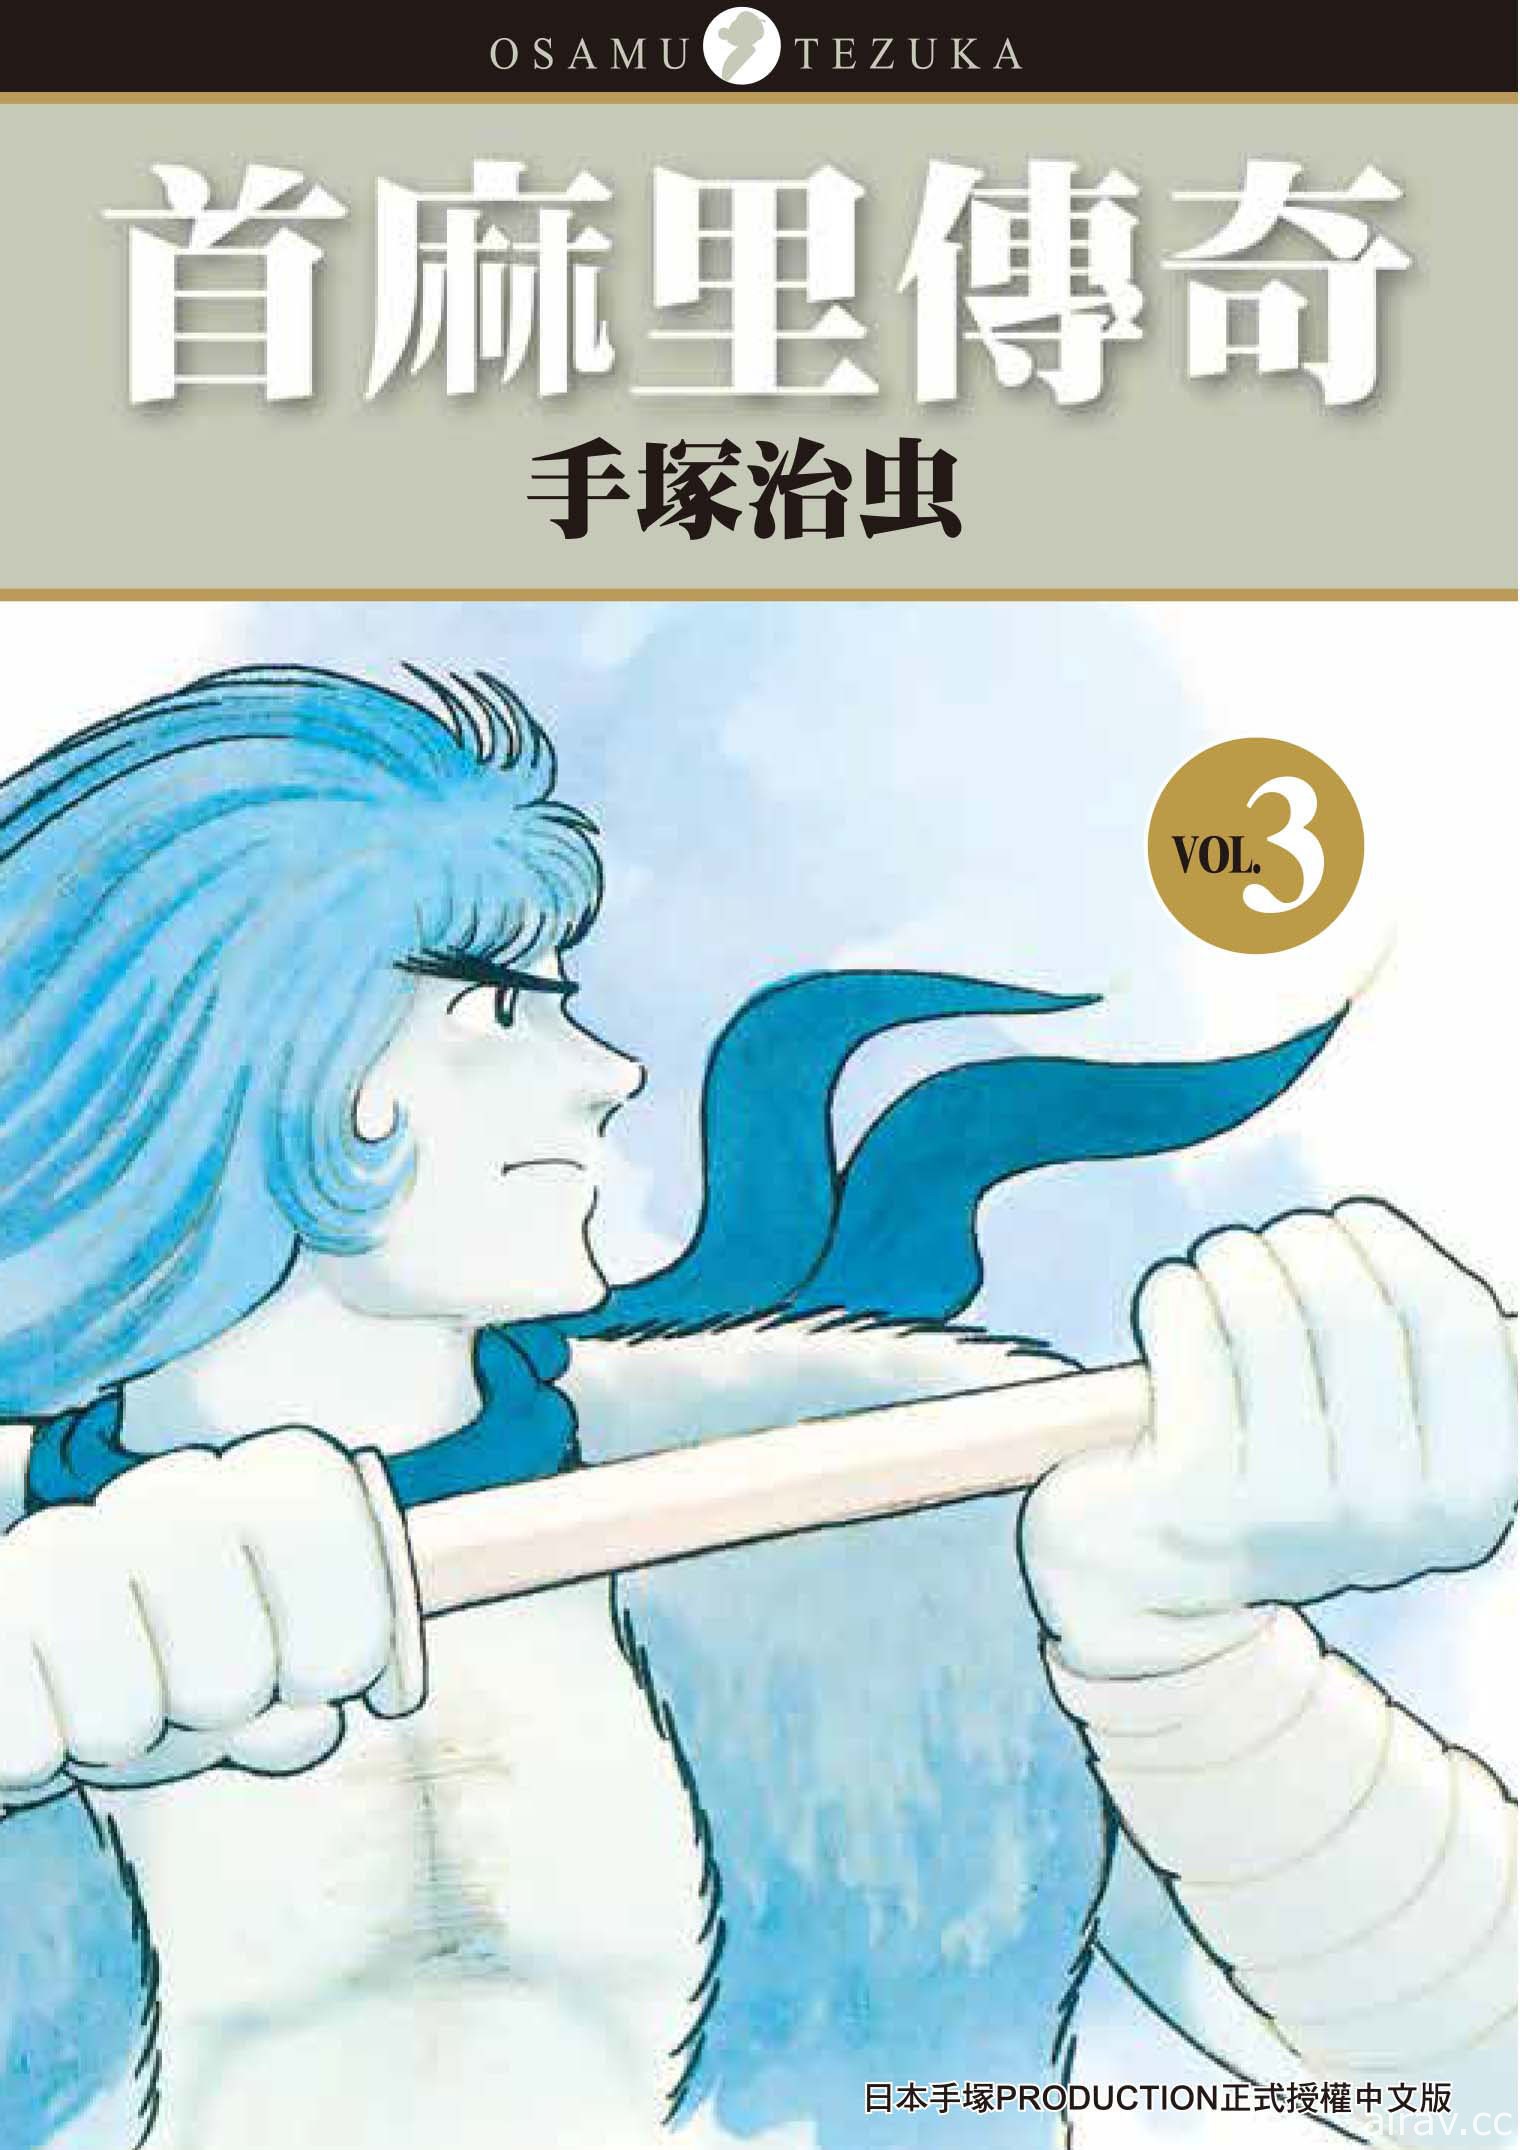 【書訊】台灣東販 9 月漫畫新書《與零廚藝妖精共度遊牧生活》等作